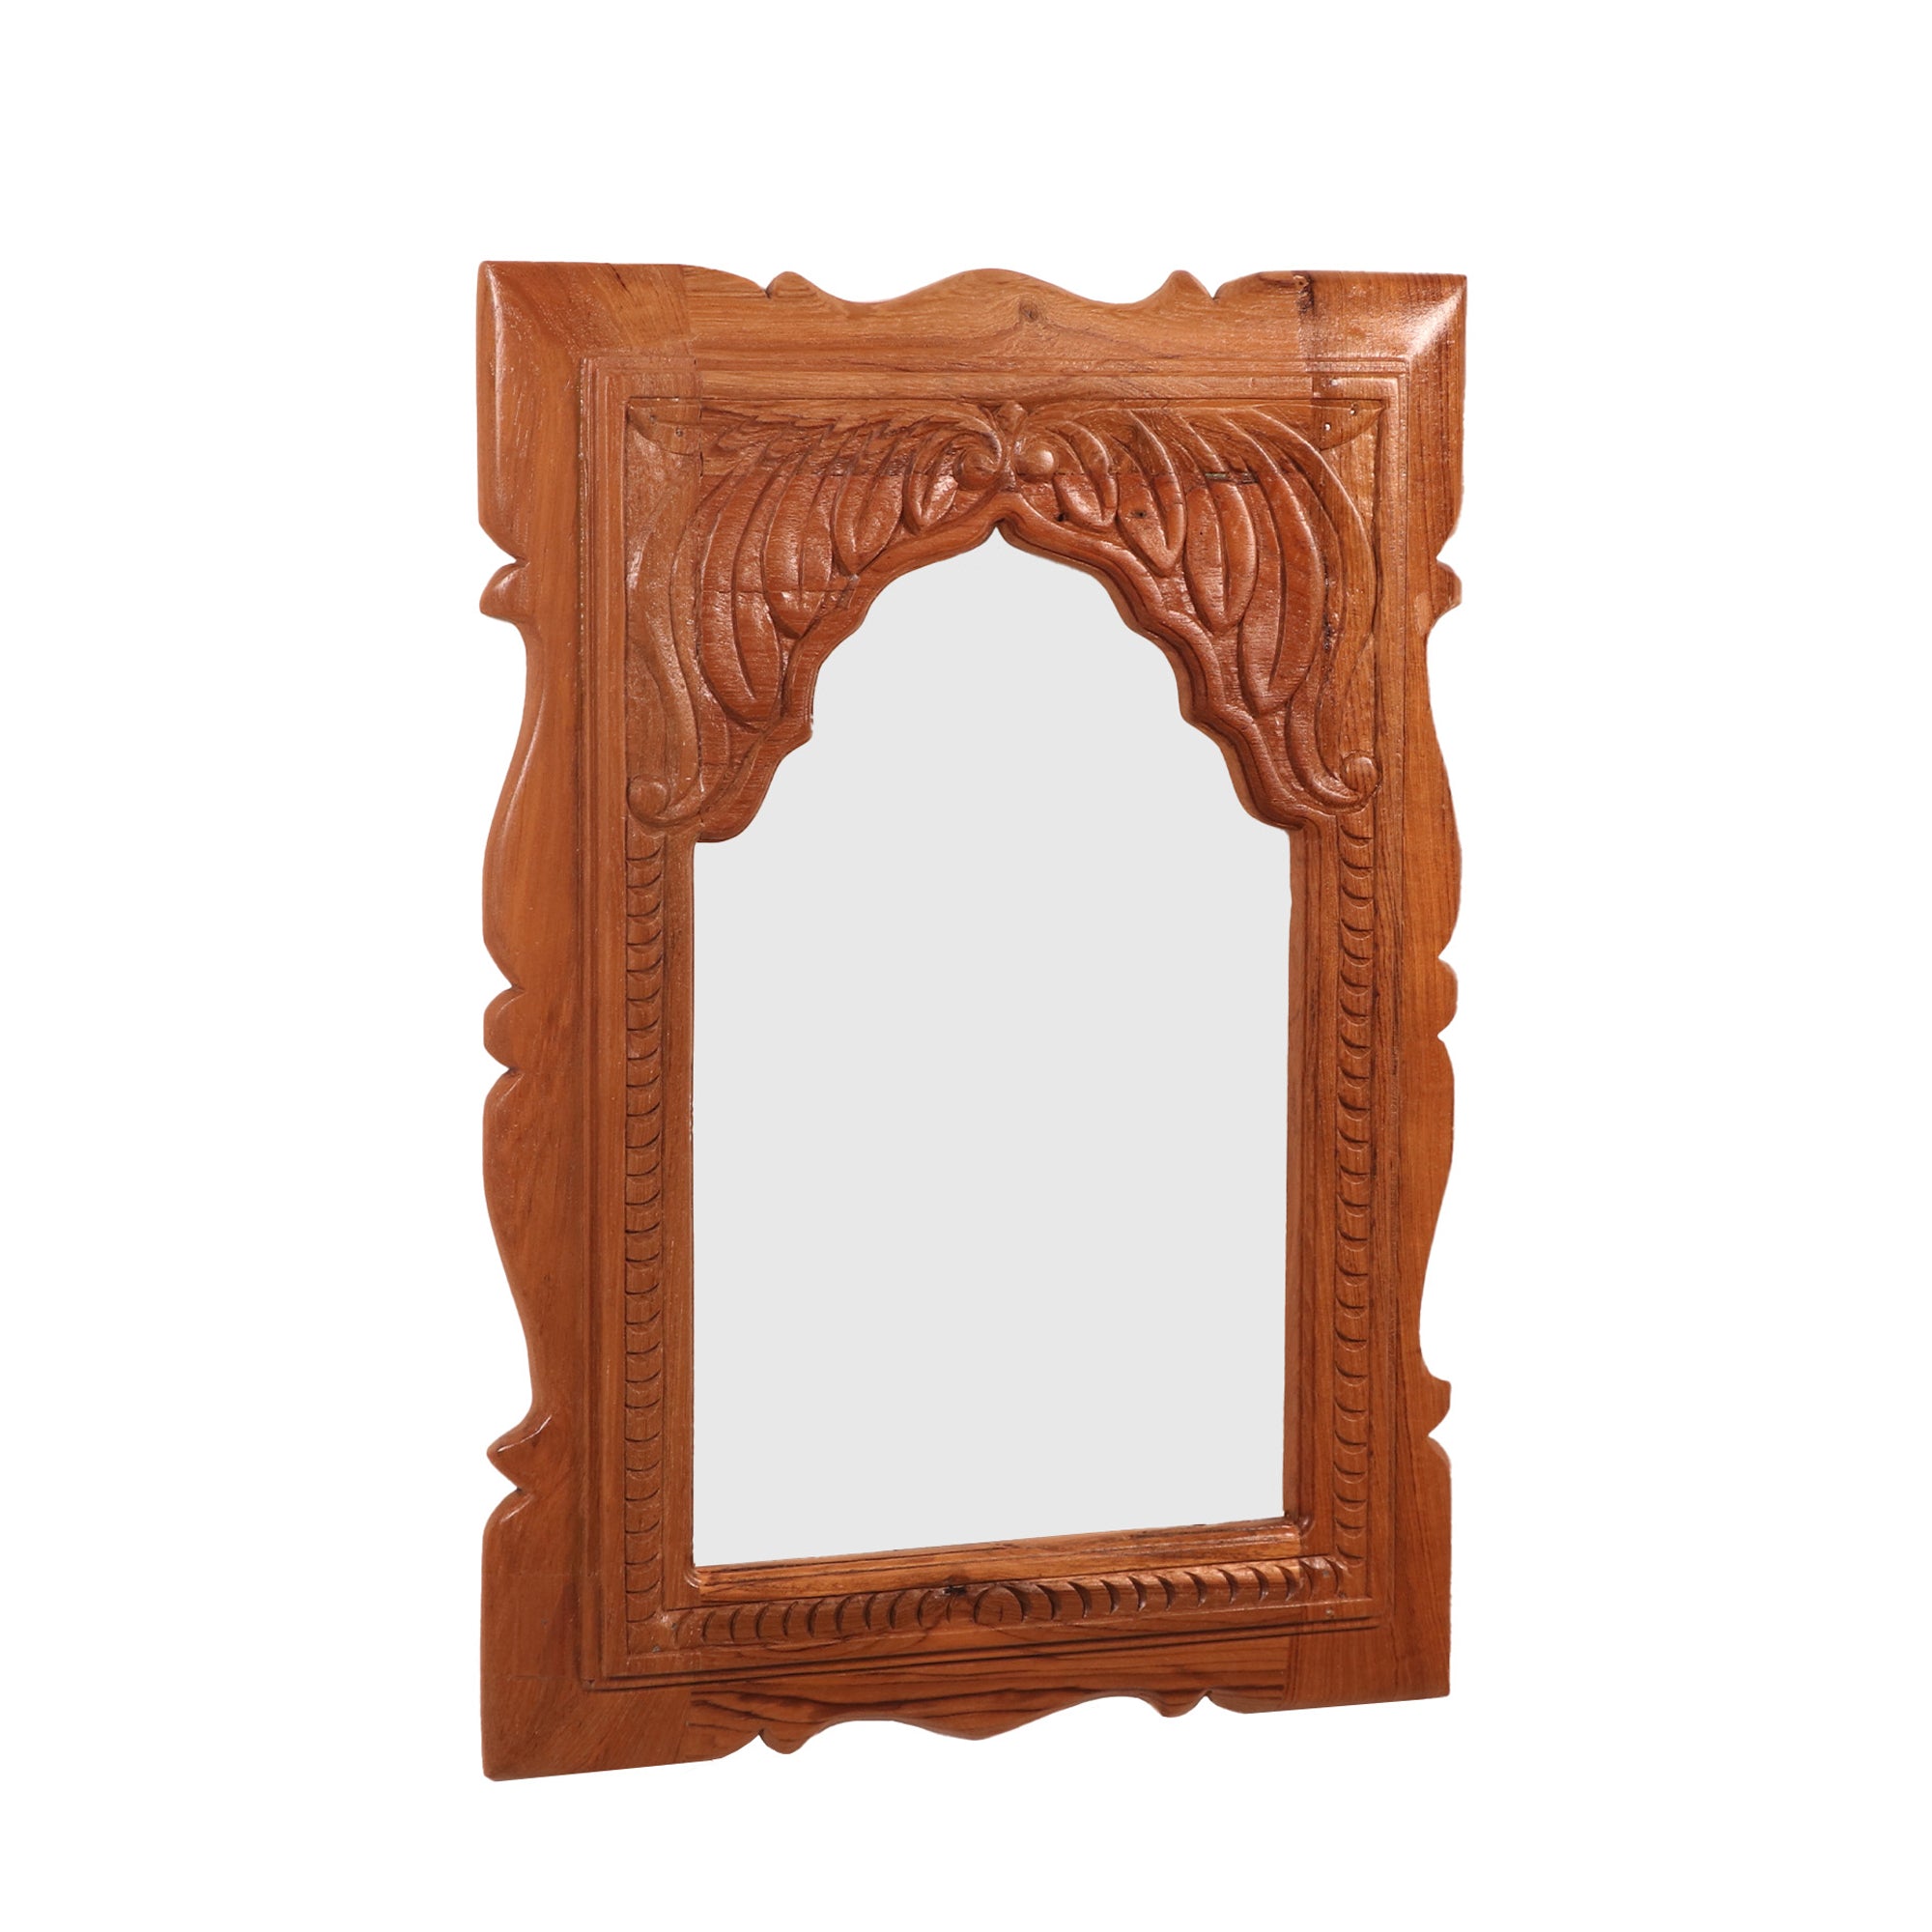 Carved flower pattern Teak Mirror Frame Mirror